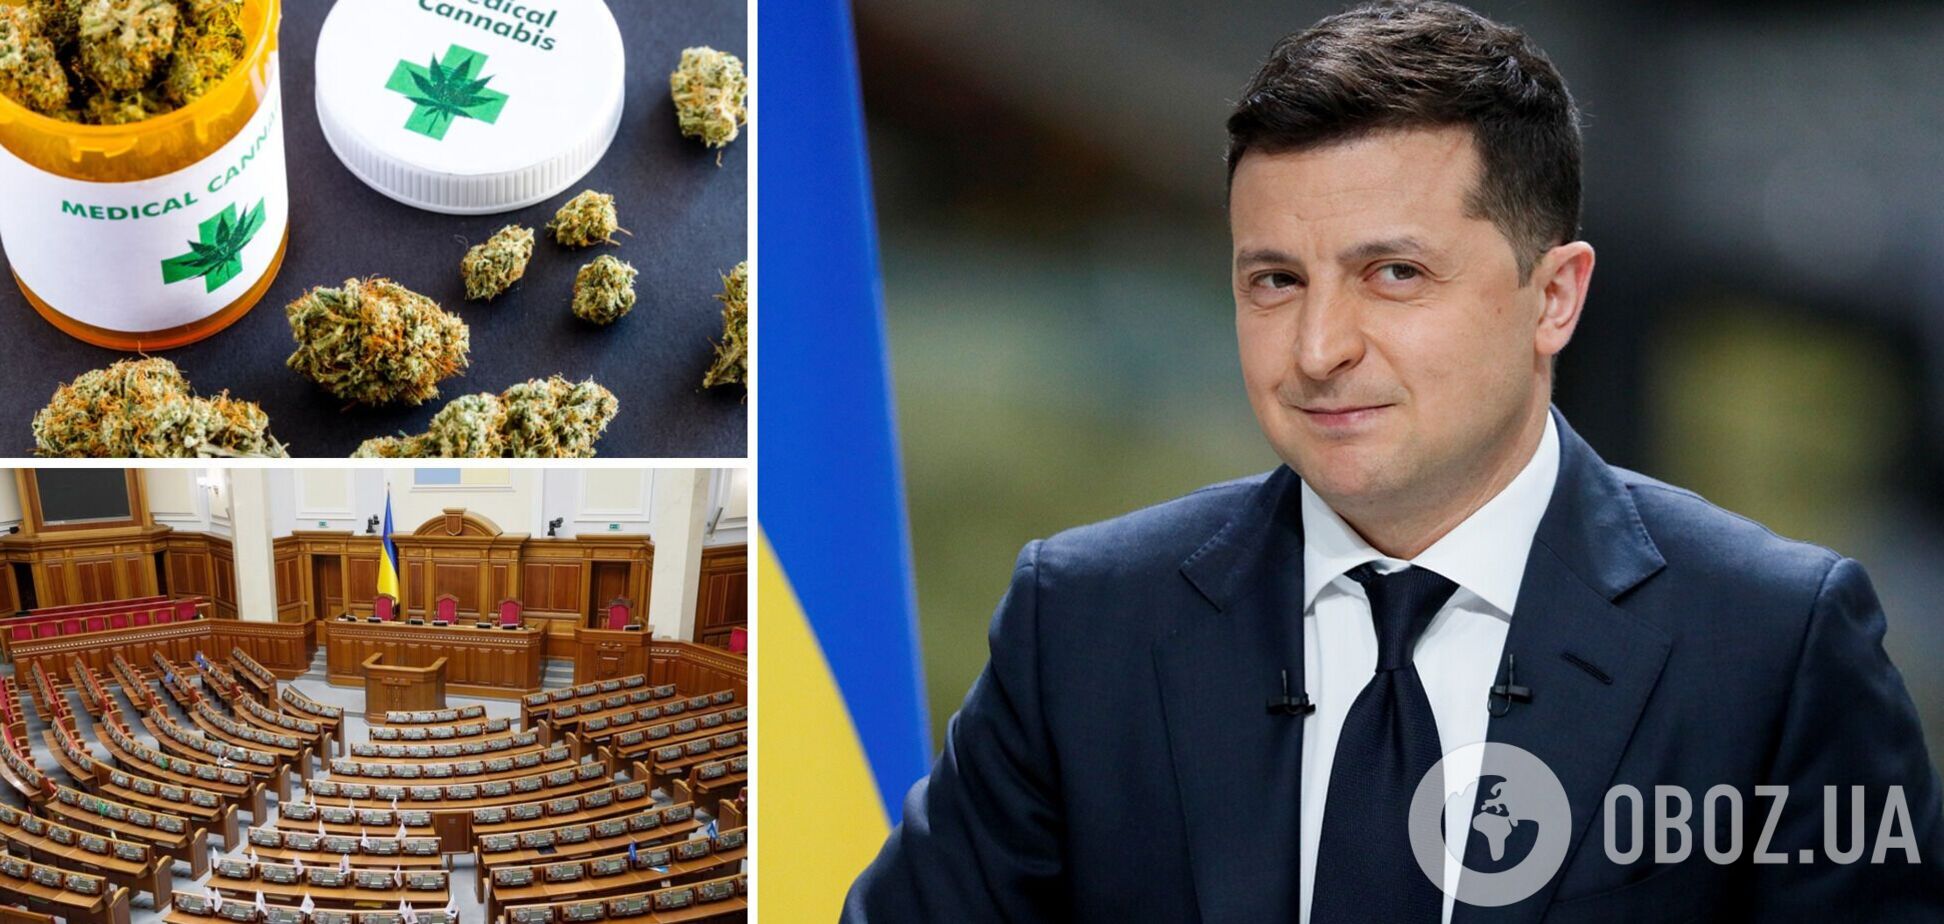 Зеленский созывает внеочередное заседание ВР для легализации медицинского каннабиса